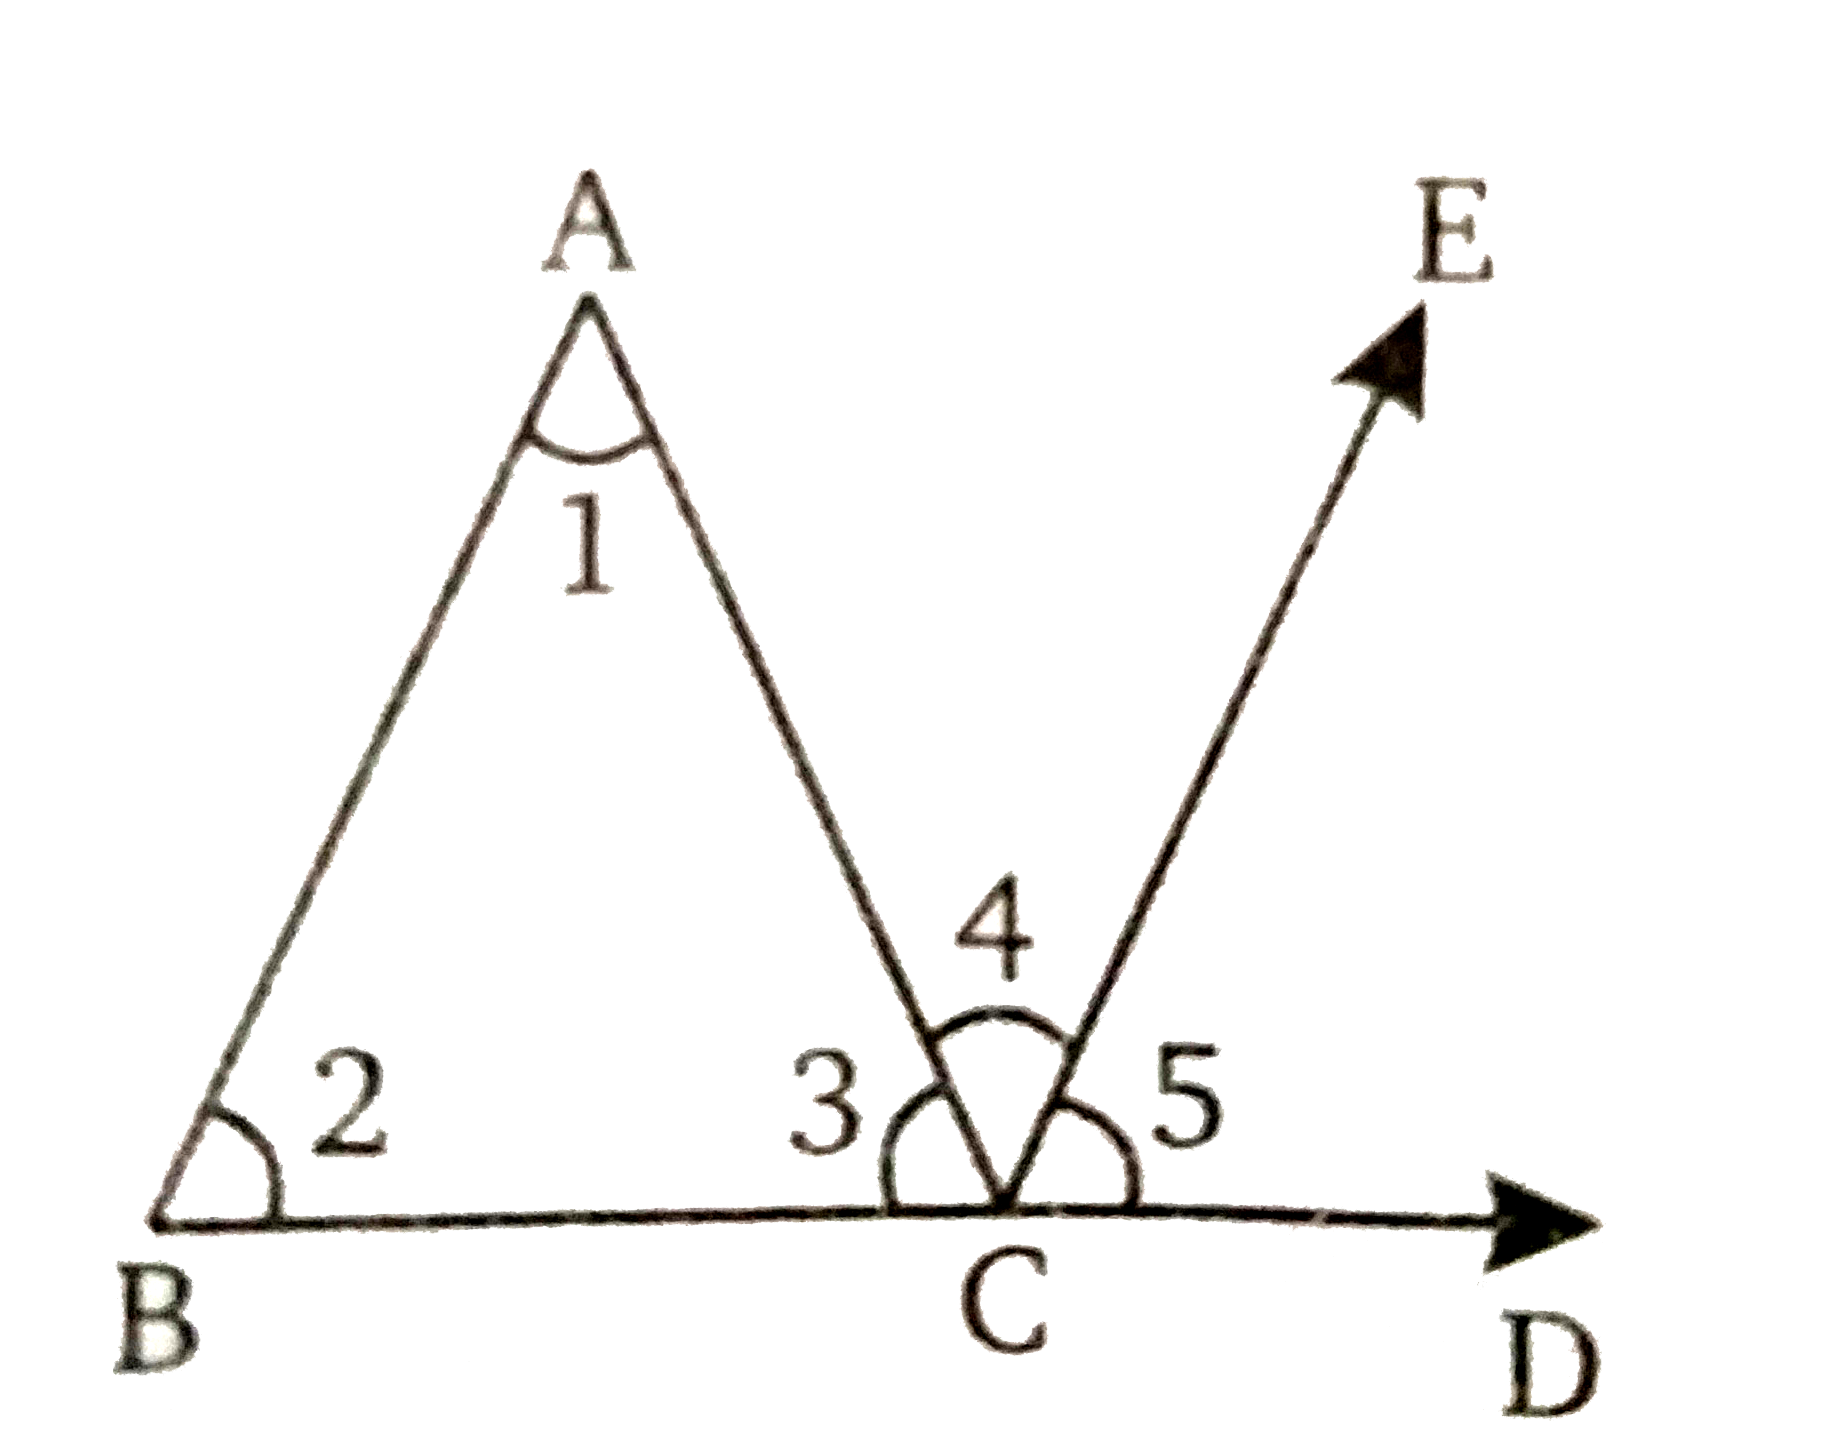 दिये गये चित्र में, Delta ABC  की भुजा BC  को आगे D  तक बढ़ाने पर एक रेखा BD  बनती है । रेखा CE,BAके समान्तर खींची गई है । त्रिभुज के कोणों के योगफल  सम्बन्धी प्रमेय का प्रयोग किए बिना सिद्ध करें कि  /ACD = /A + /B  तथा फिर निर्धारित करें कि  /A+ /B + /C = 180^(@)